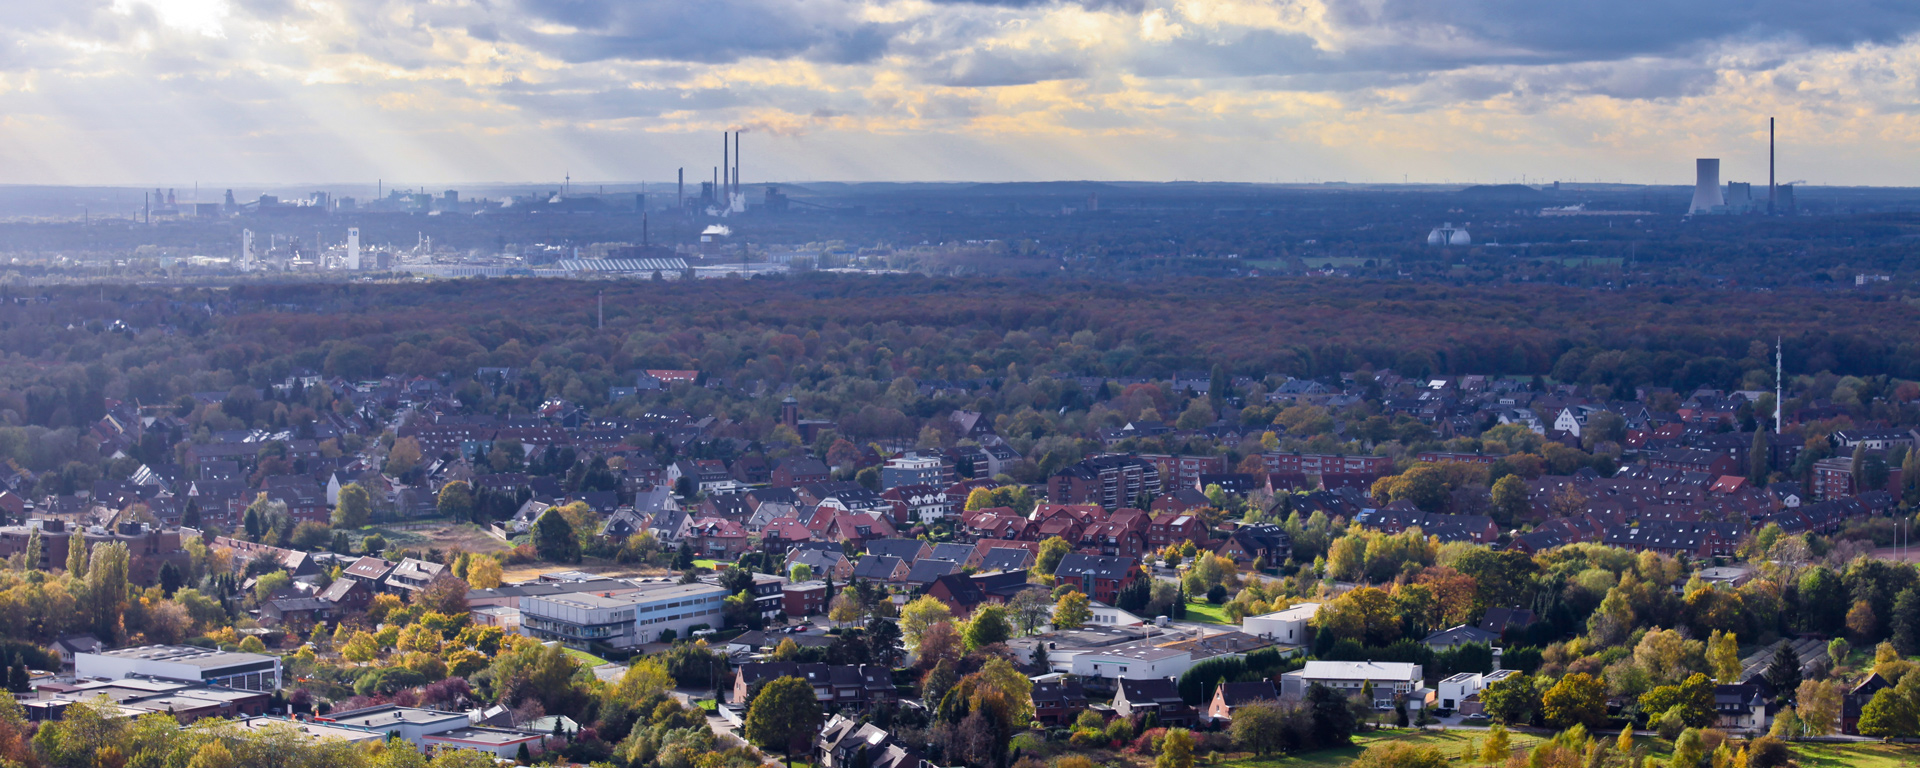 Luftaufnahme der Stadt Oberhausen mit Bäumen und Häusern vor aufragenden Industrieschloten und bewölktem Himmel